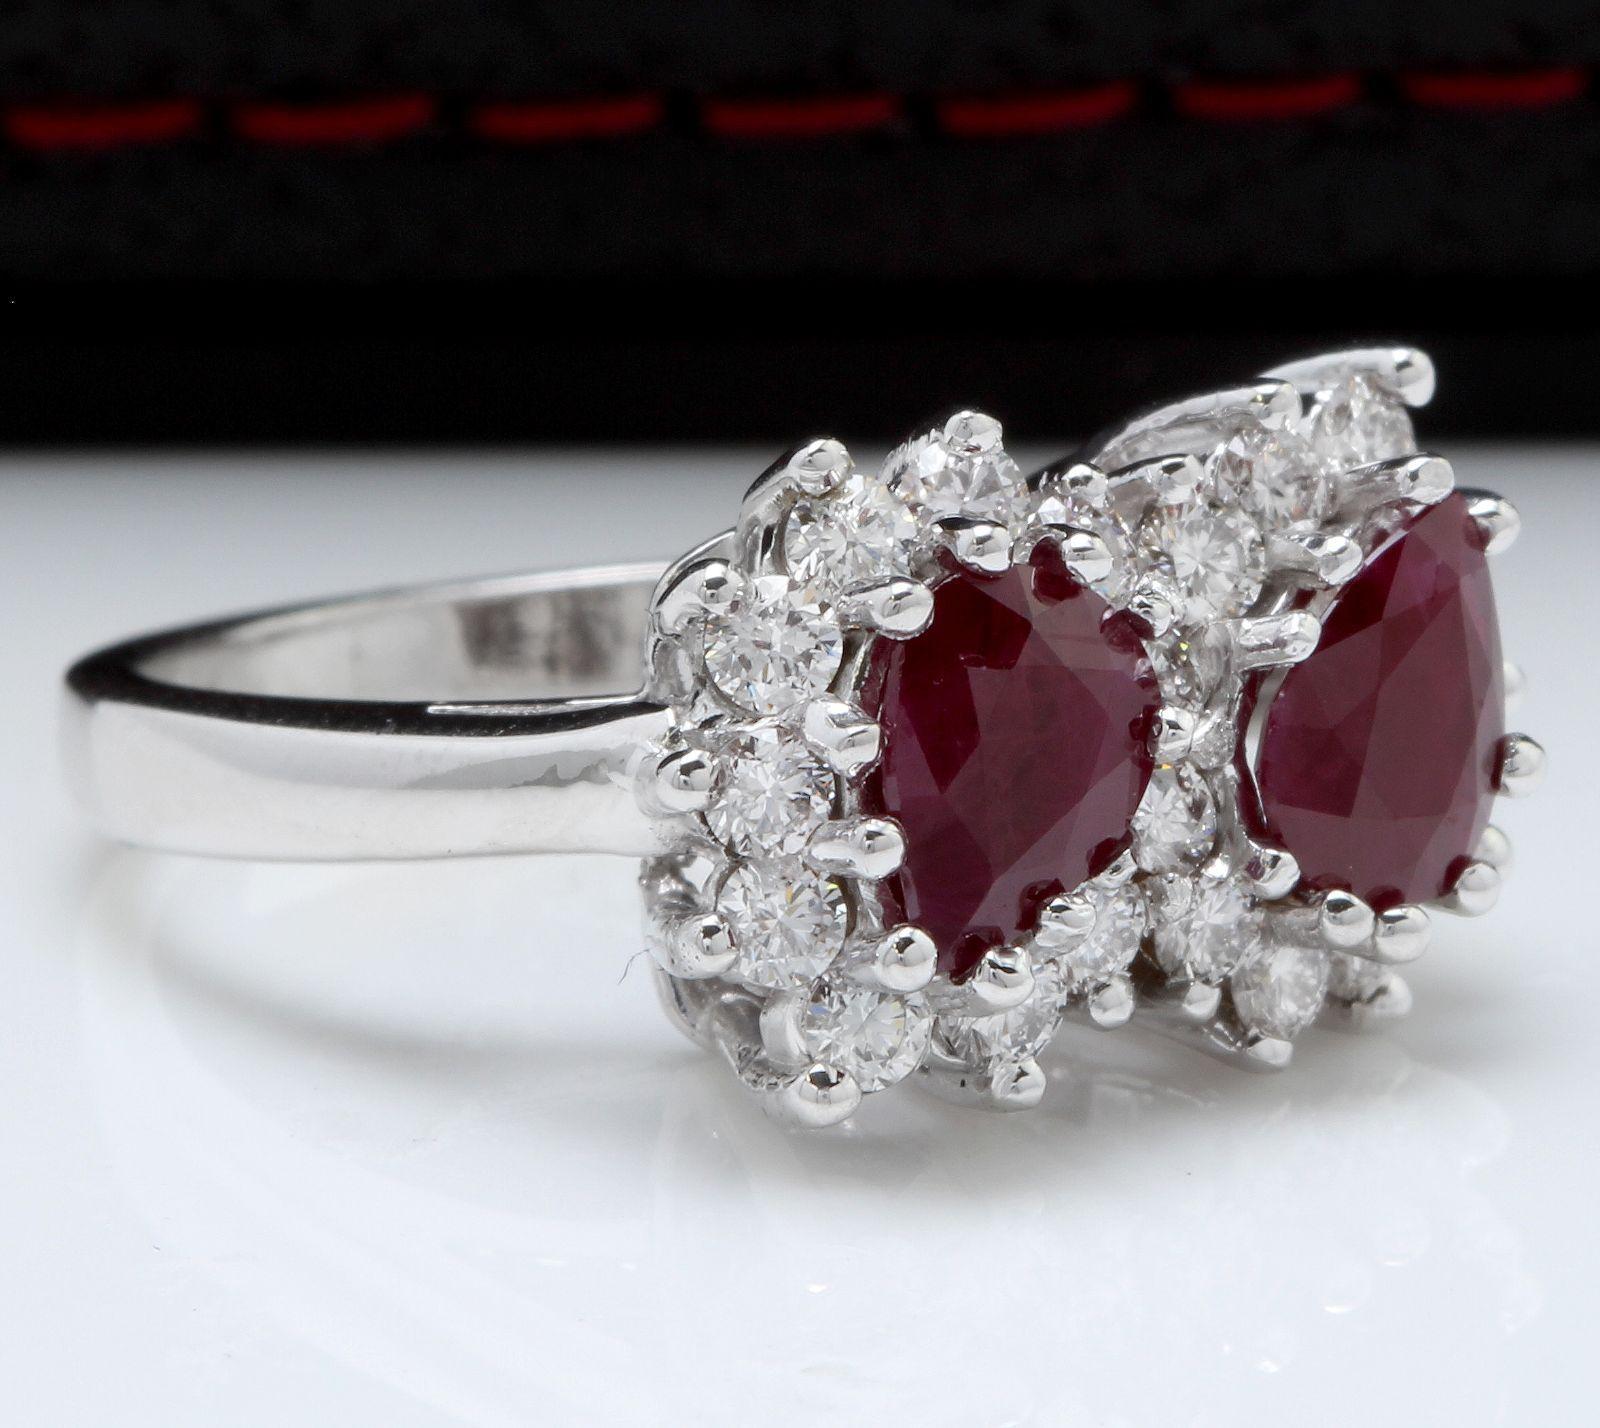 2.80 Karat Wunderschöner natürlicher Rubin und Diamant 14K Massiv Weißgold Ring

Total Natural Pear Cut Red Rubies Gewicht ist: 1.80 Karat

Natürliche runde Diamanten Gewicht ist: 1.00 Karat (Farbe G / Reinheit VS2-SI1)

Ringgröße: 5,5 (auf Anfrage